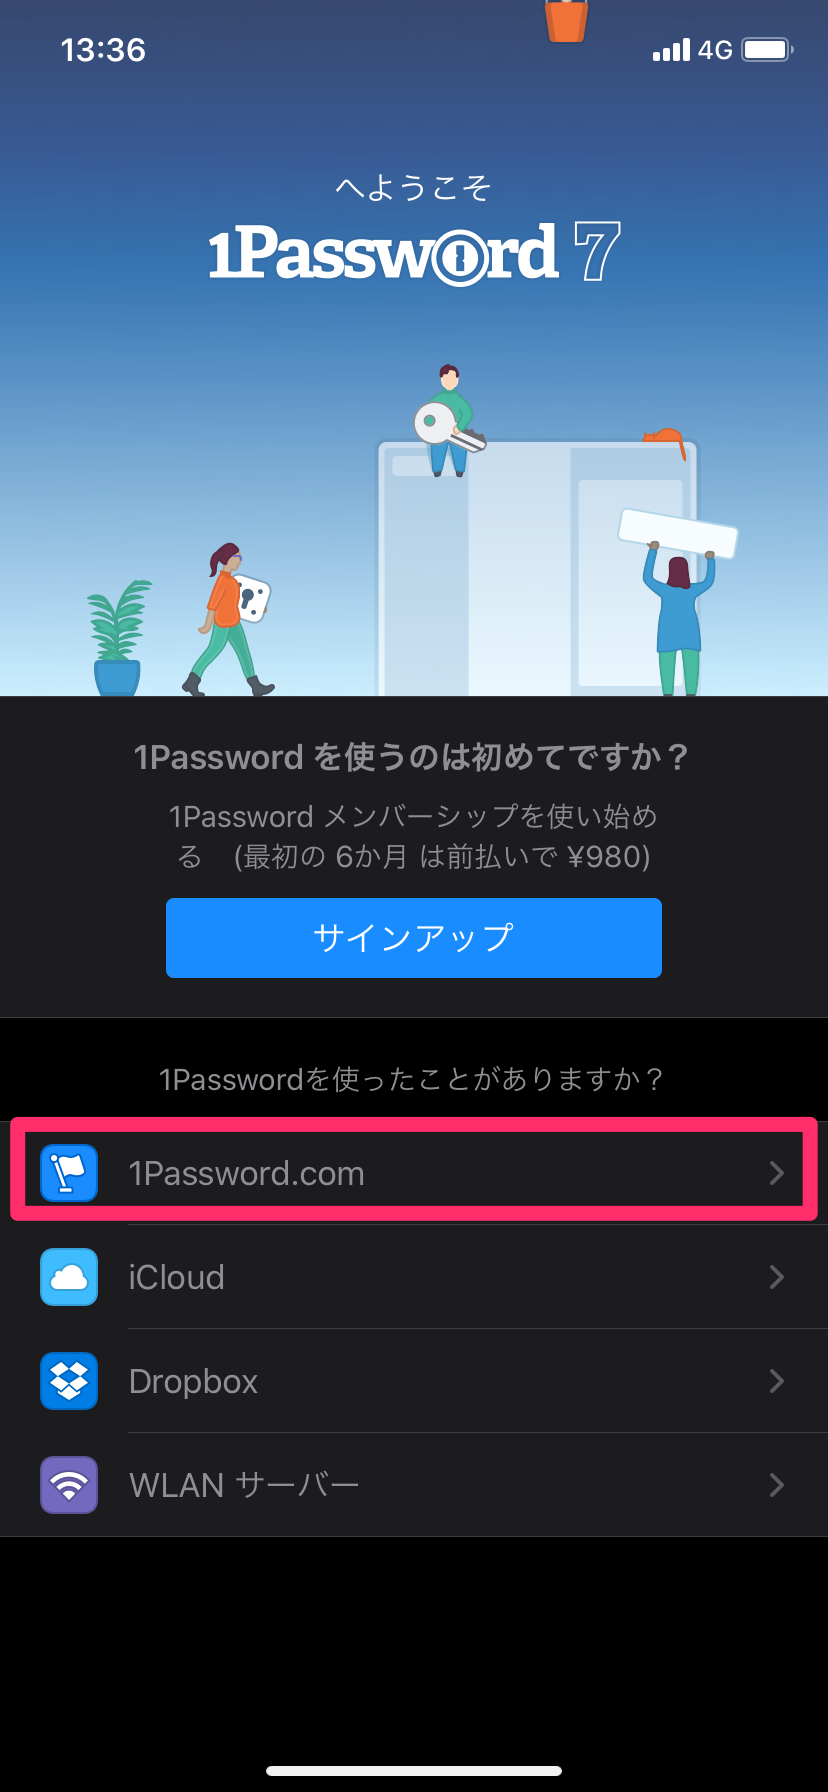 1Passwordのアカウント登録とMacとiOSアプリのインストール方法【2019年版】